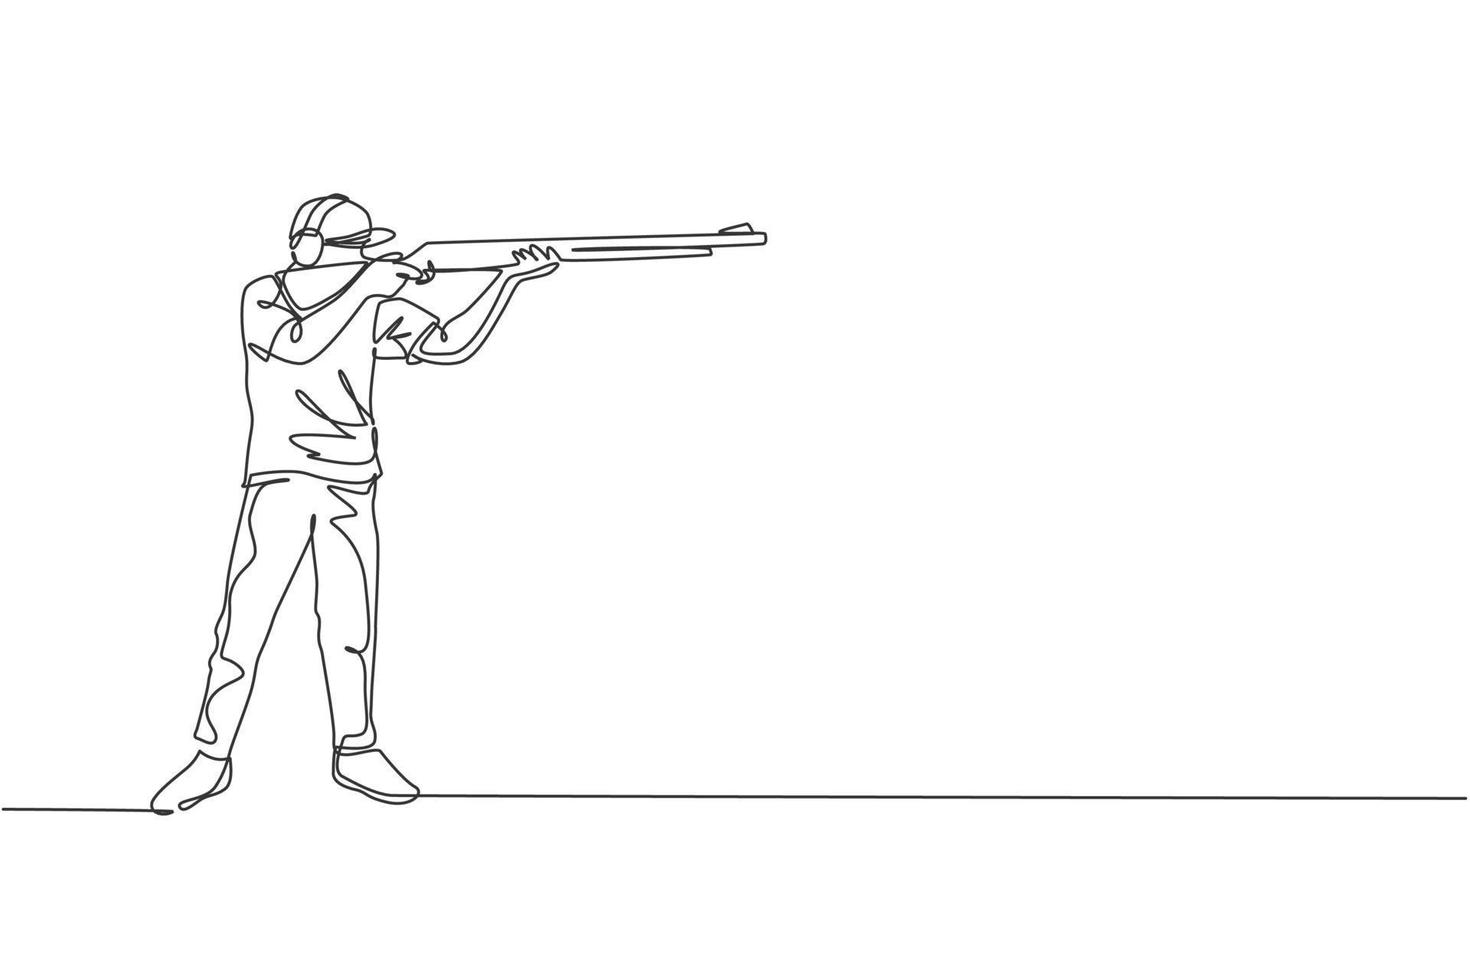 en kontinuerlig linjeritning av ung man på träning på träningsplats för tävling med gevärshagelgevär. utomhus skytte sport koncept. dynamisk enda rad rita design vektorillustration vektor